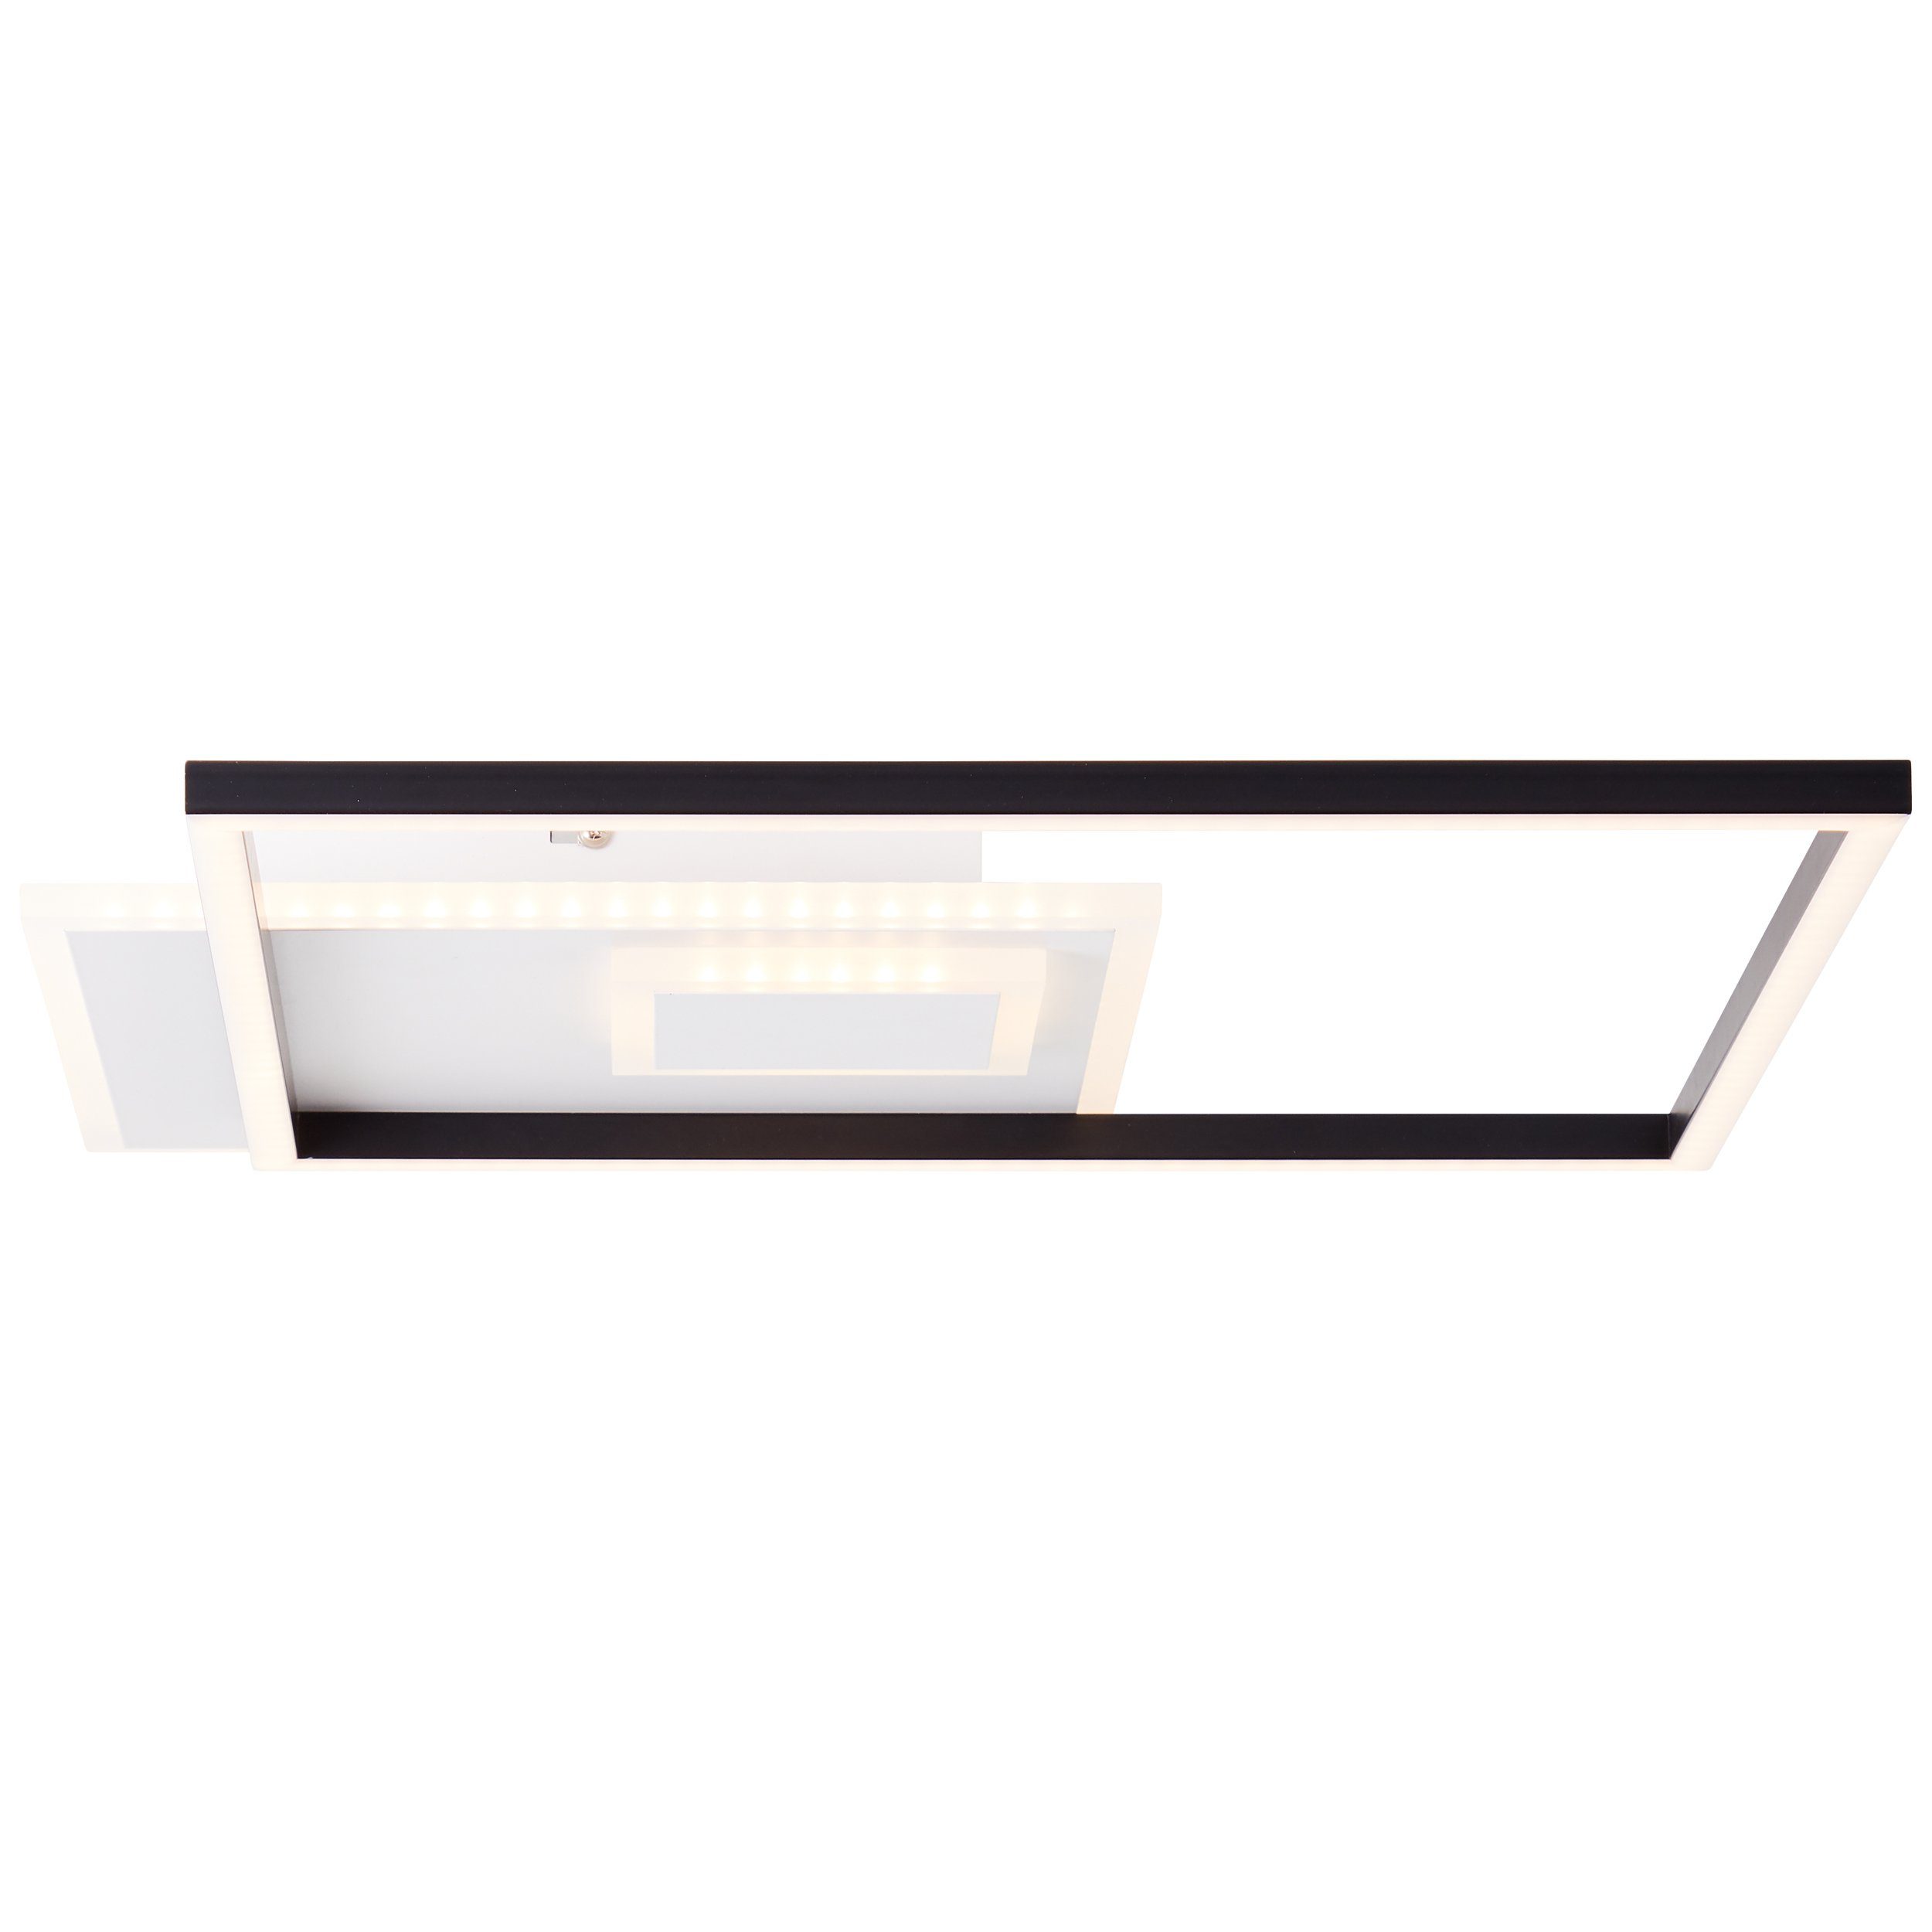 Brilliant Aufbauleuchte Iorgo, Metall/Kunststoff schwarz/weiß, Deckenaufbau-Paneel Iorgo 44x44cm LED